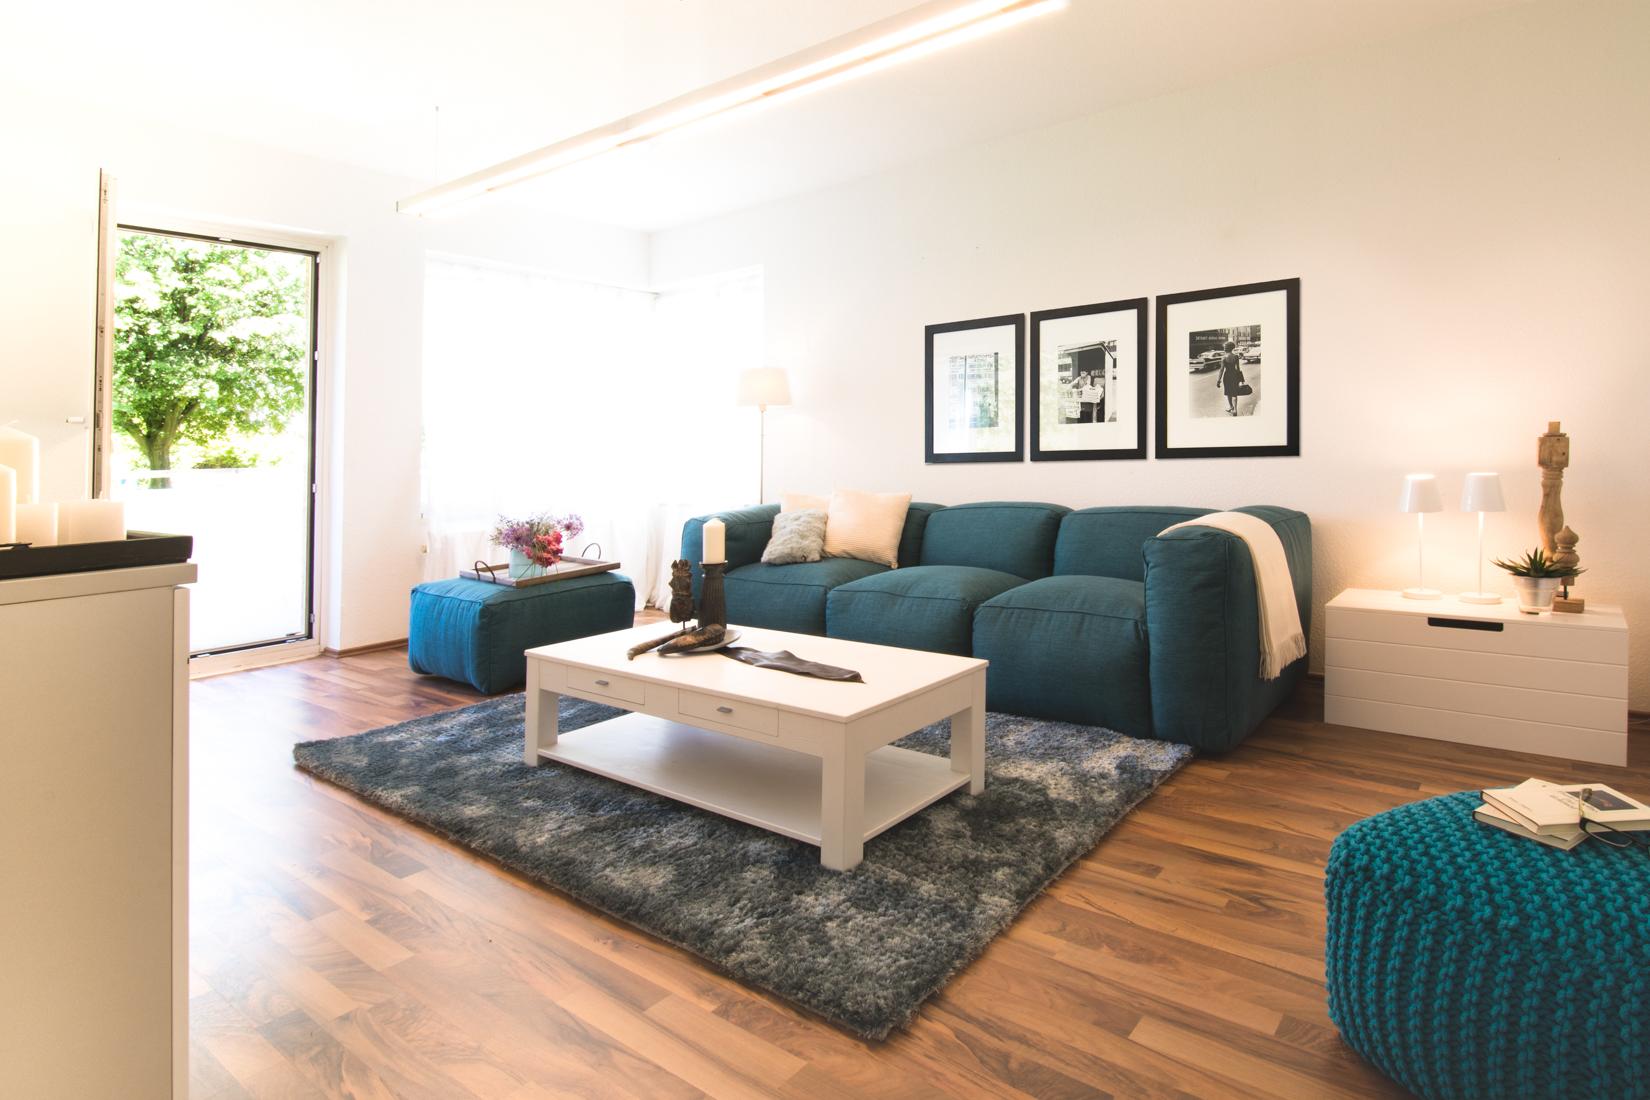 Wohnzimmer #couchtisch #teppich #pouf #sofa #blauessofa #weißercouchtisch #wandbild #tisch ©Luna Homestaging